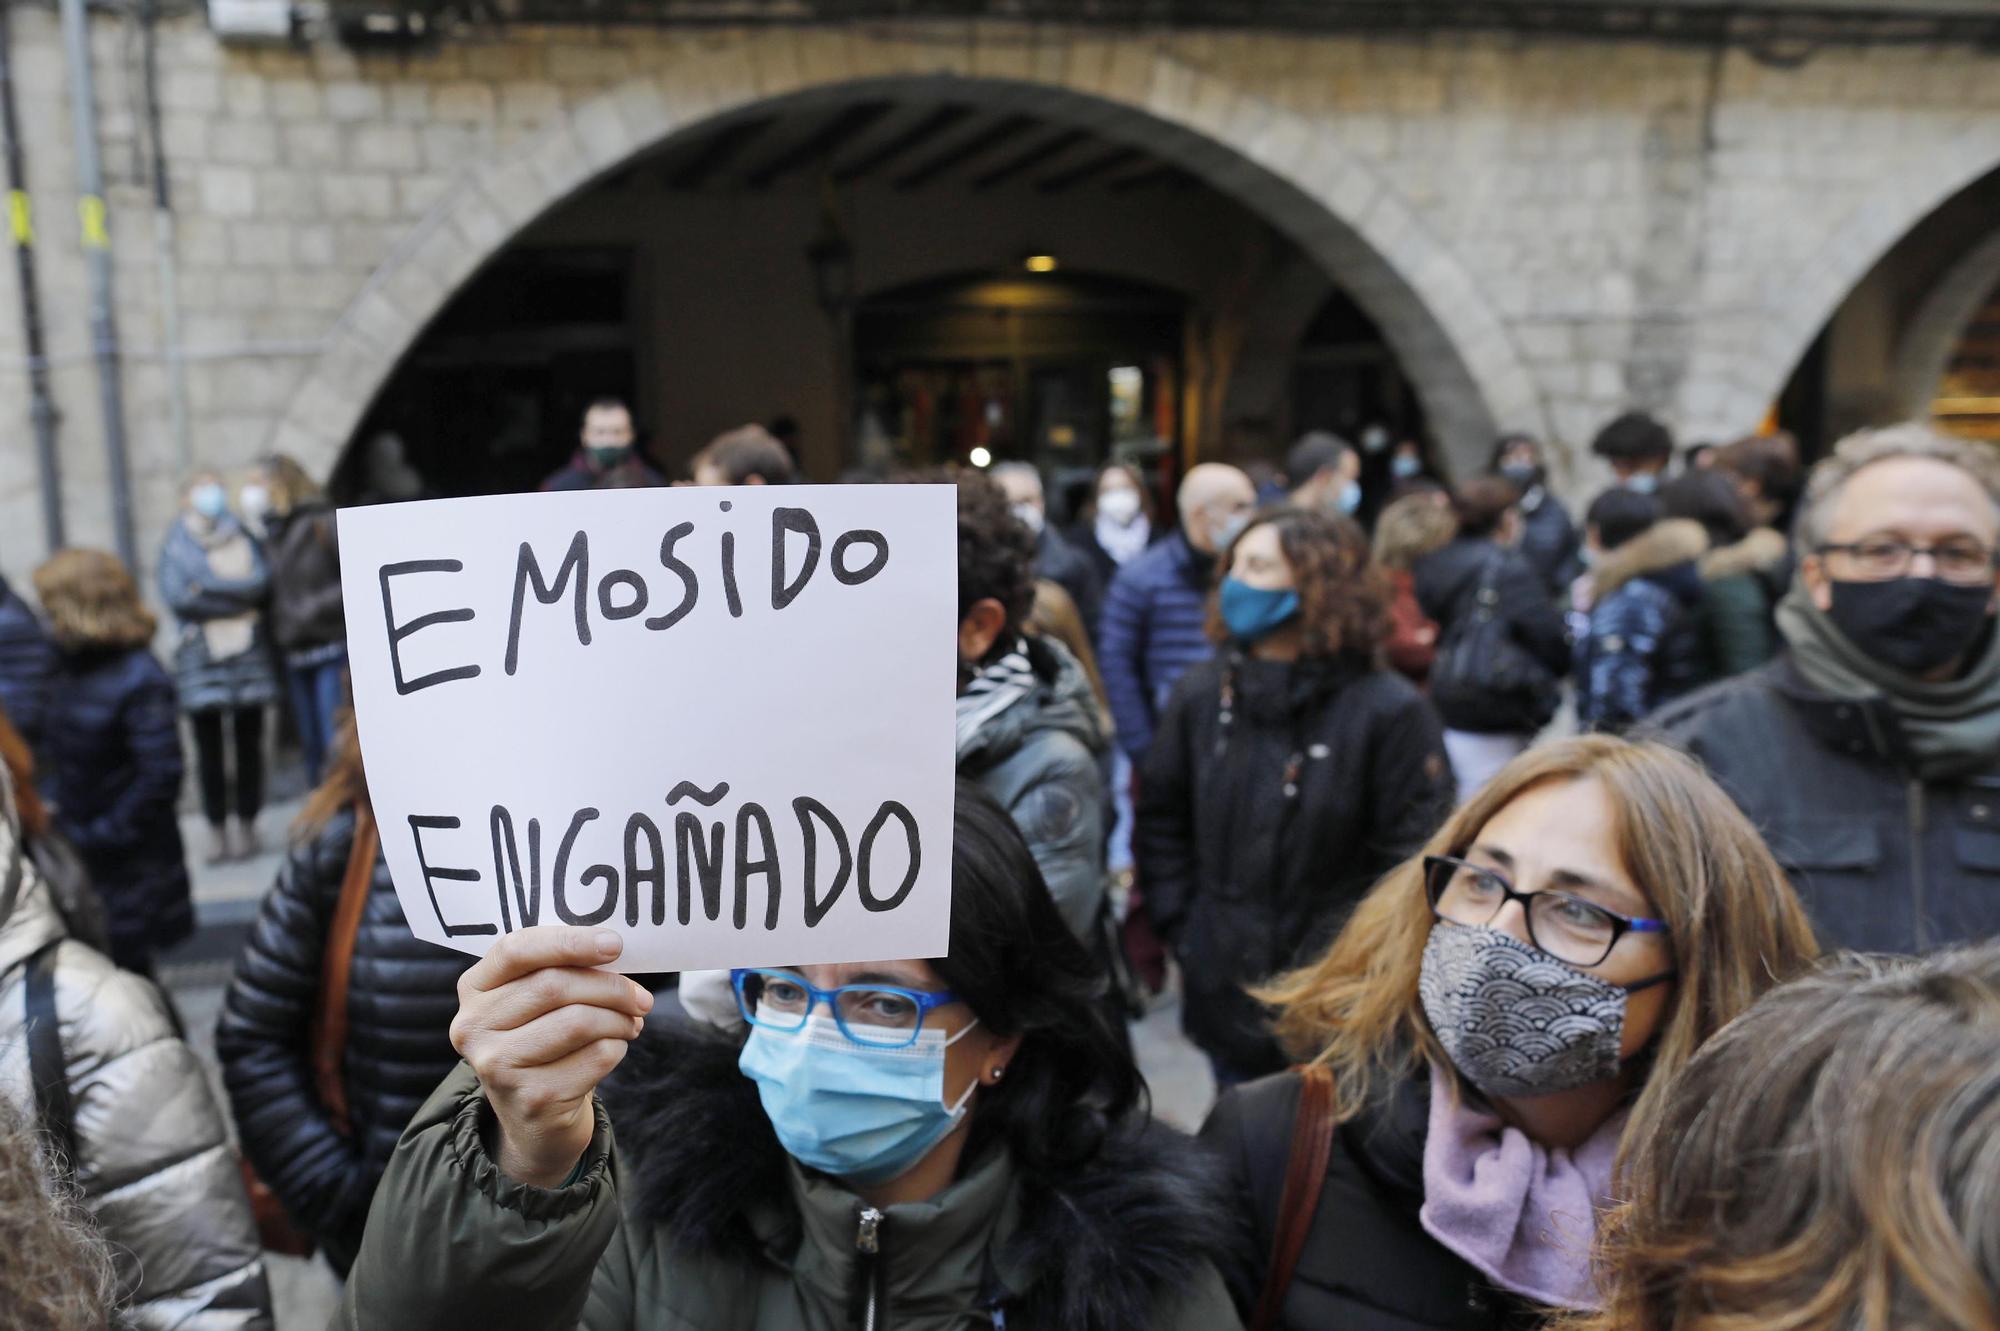 Protesta de treballadors de l’Ajuntament de Girona